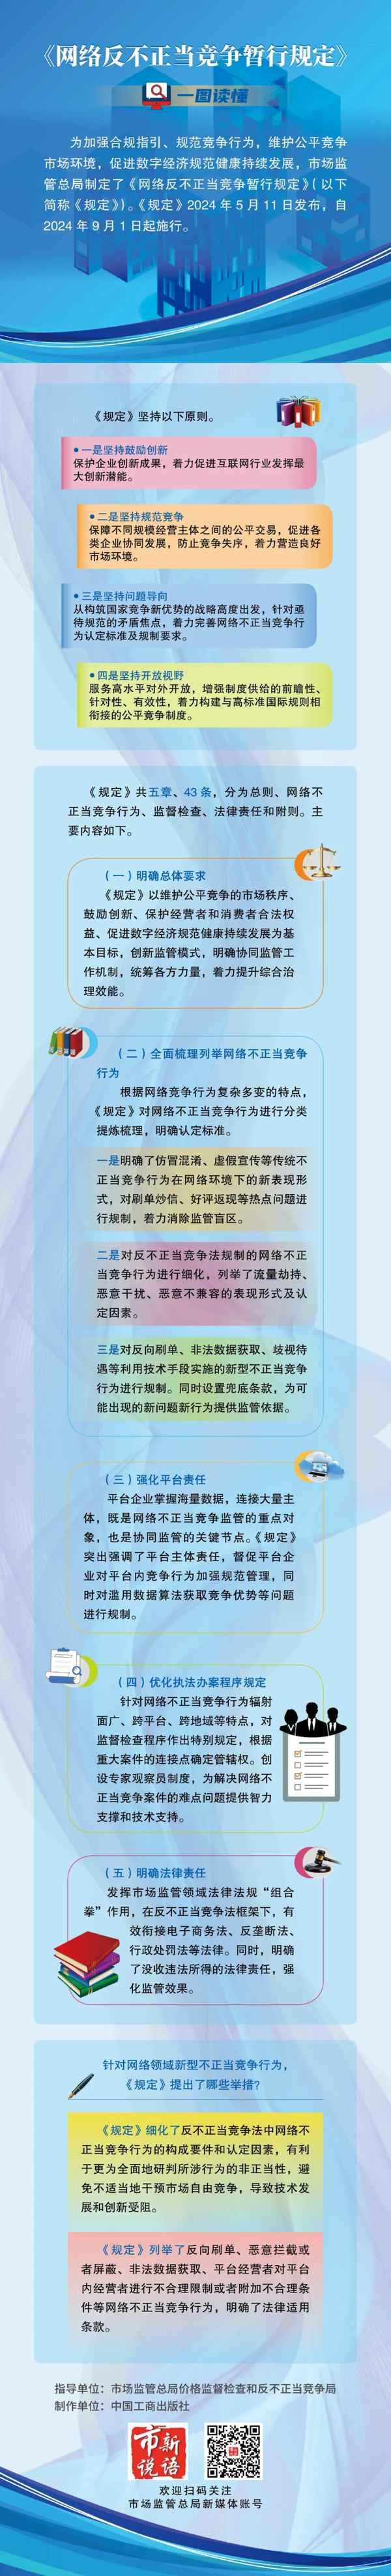 中国焦点新闻网app,中国焦点新闻网工作人员查询王保